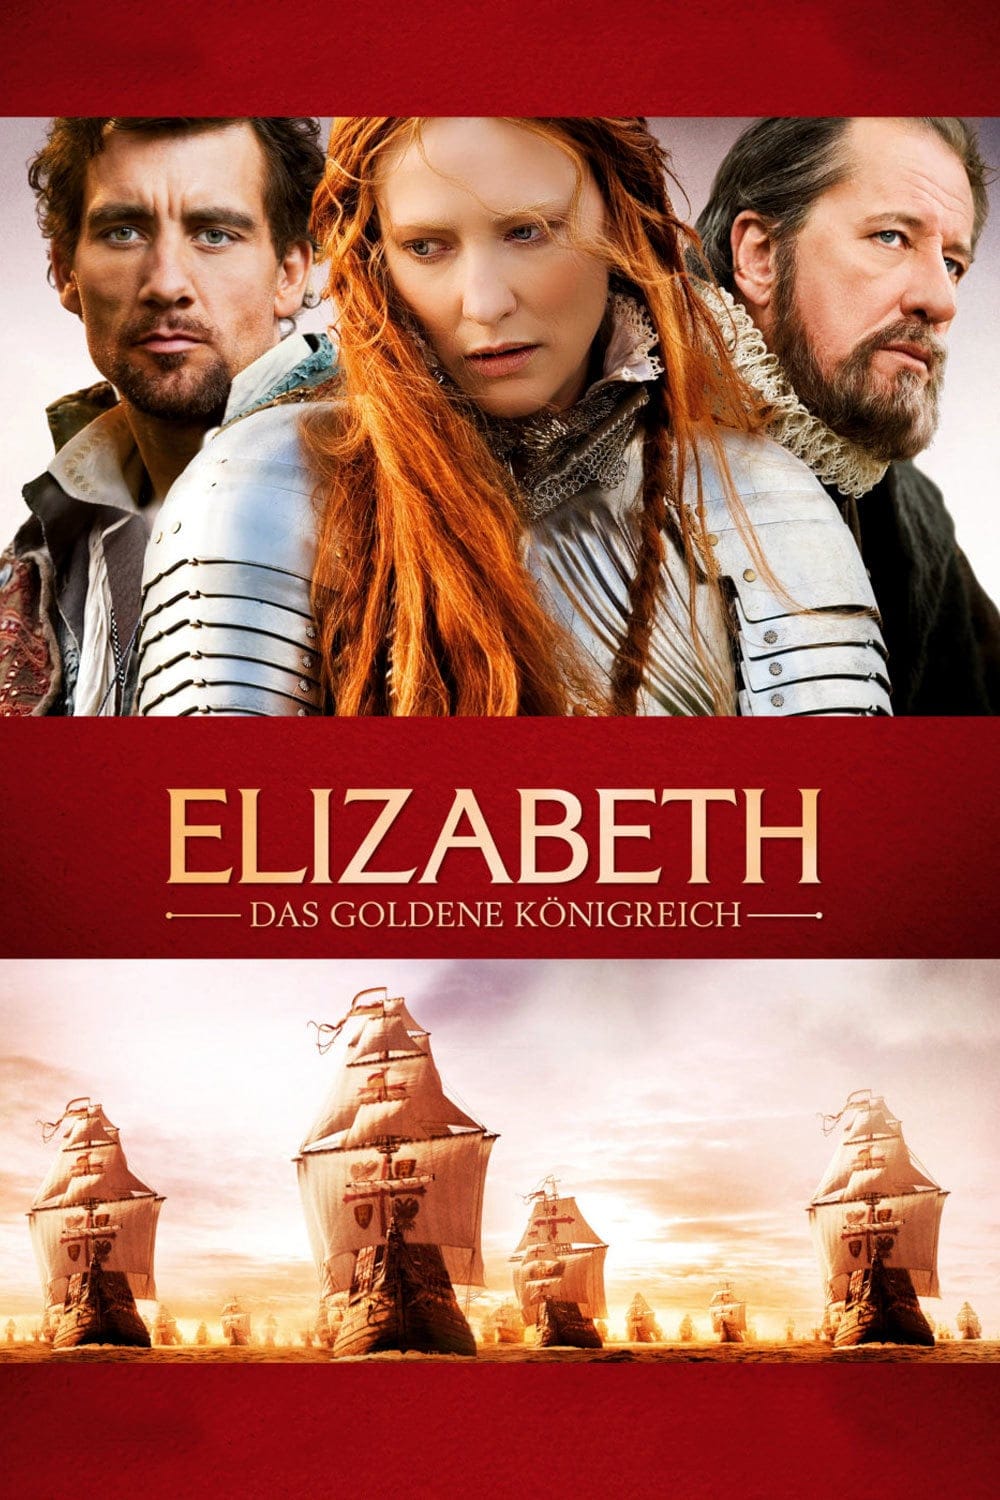 Plakat von "Elizabeth: Das goldene Königreich"